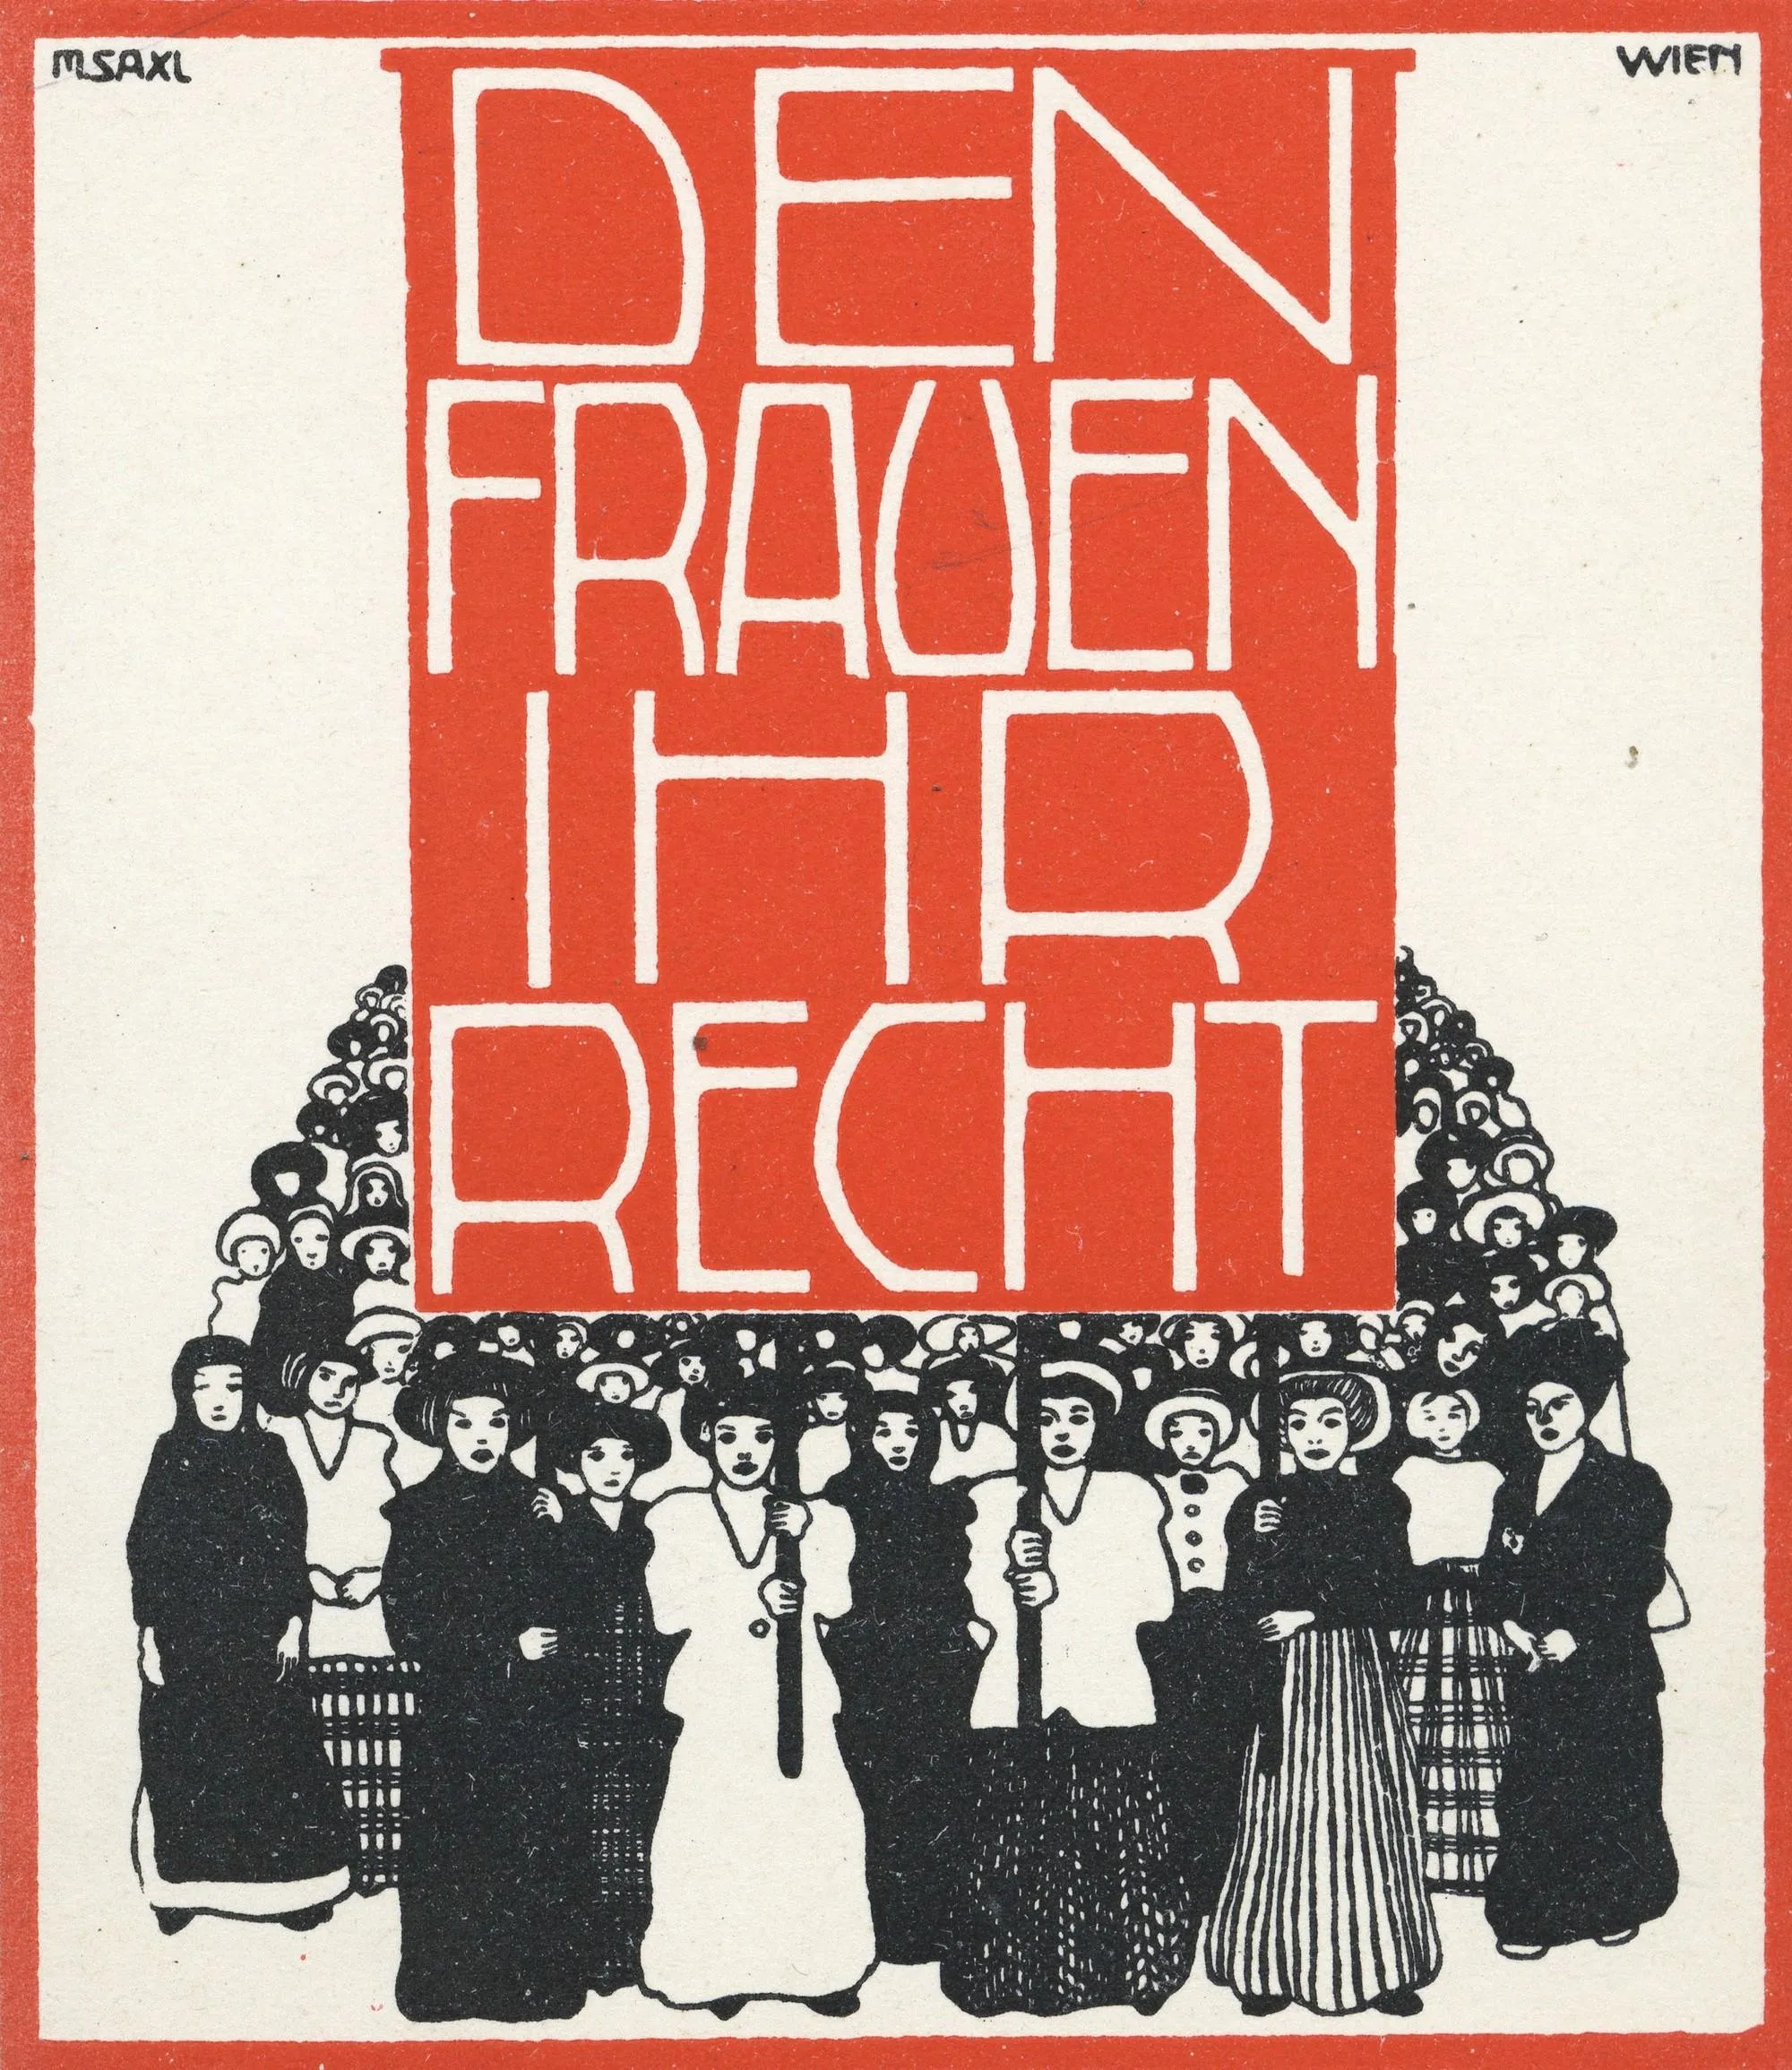 Affiche en faveur du vote des femmes, Autriche, 1914